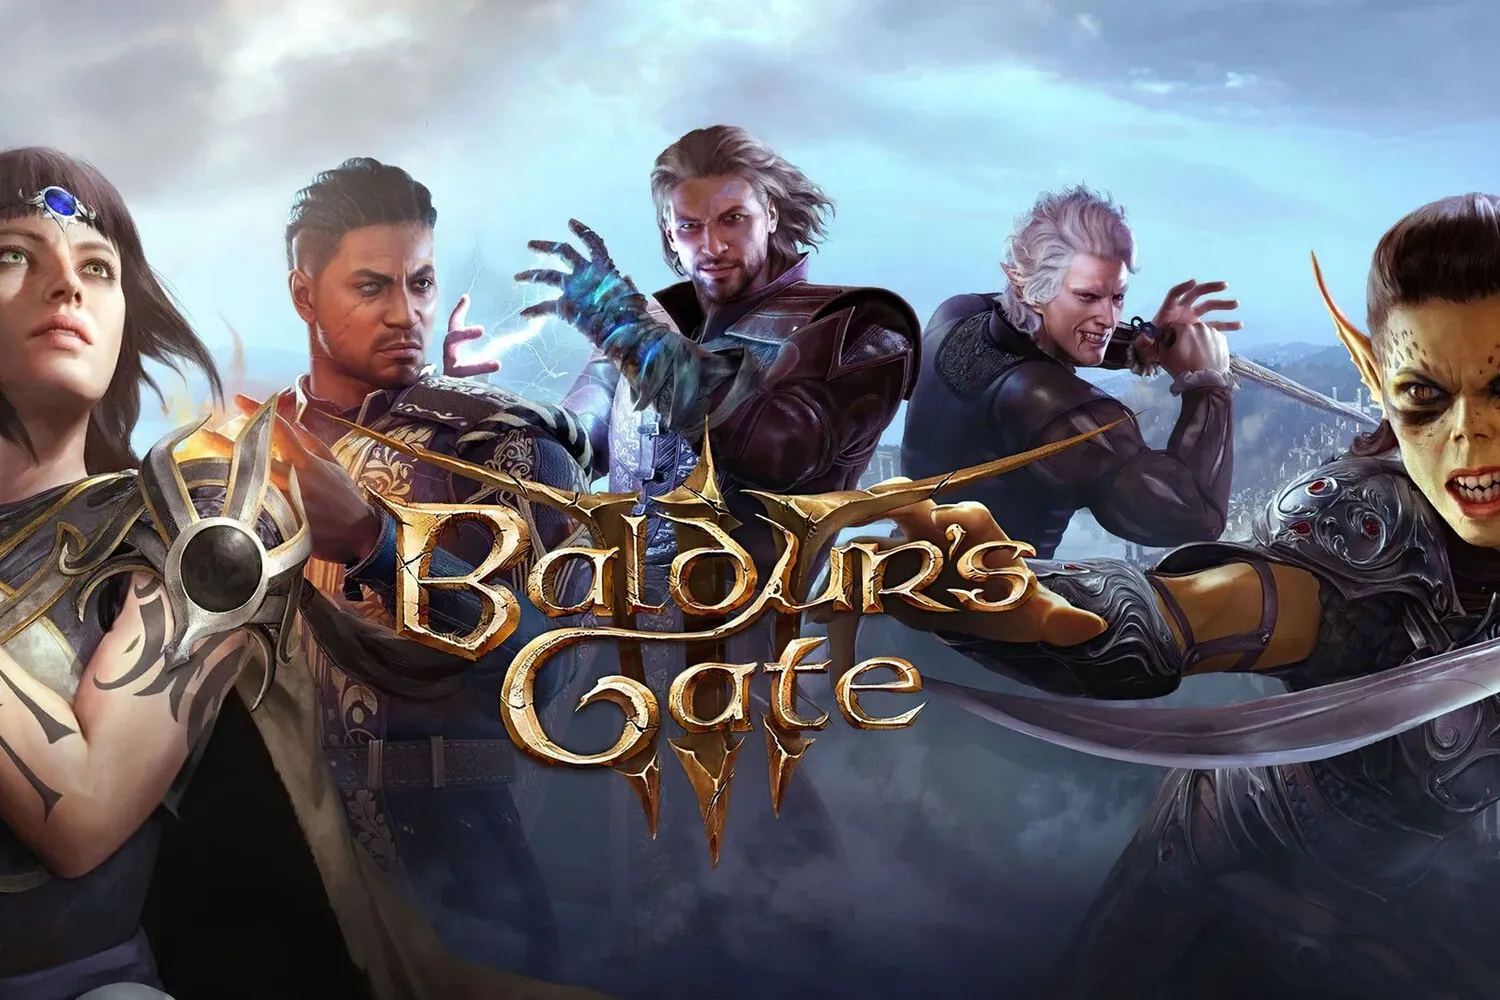 Получи эпическое приключение прямо на свой ПК - Скачай игру Baldur's Gate 3 через торрент сейчас!